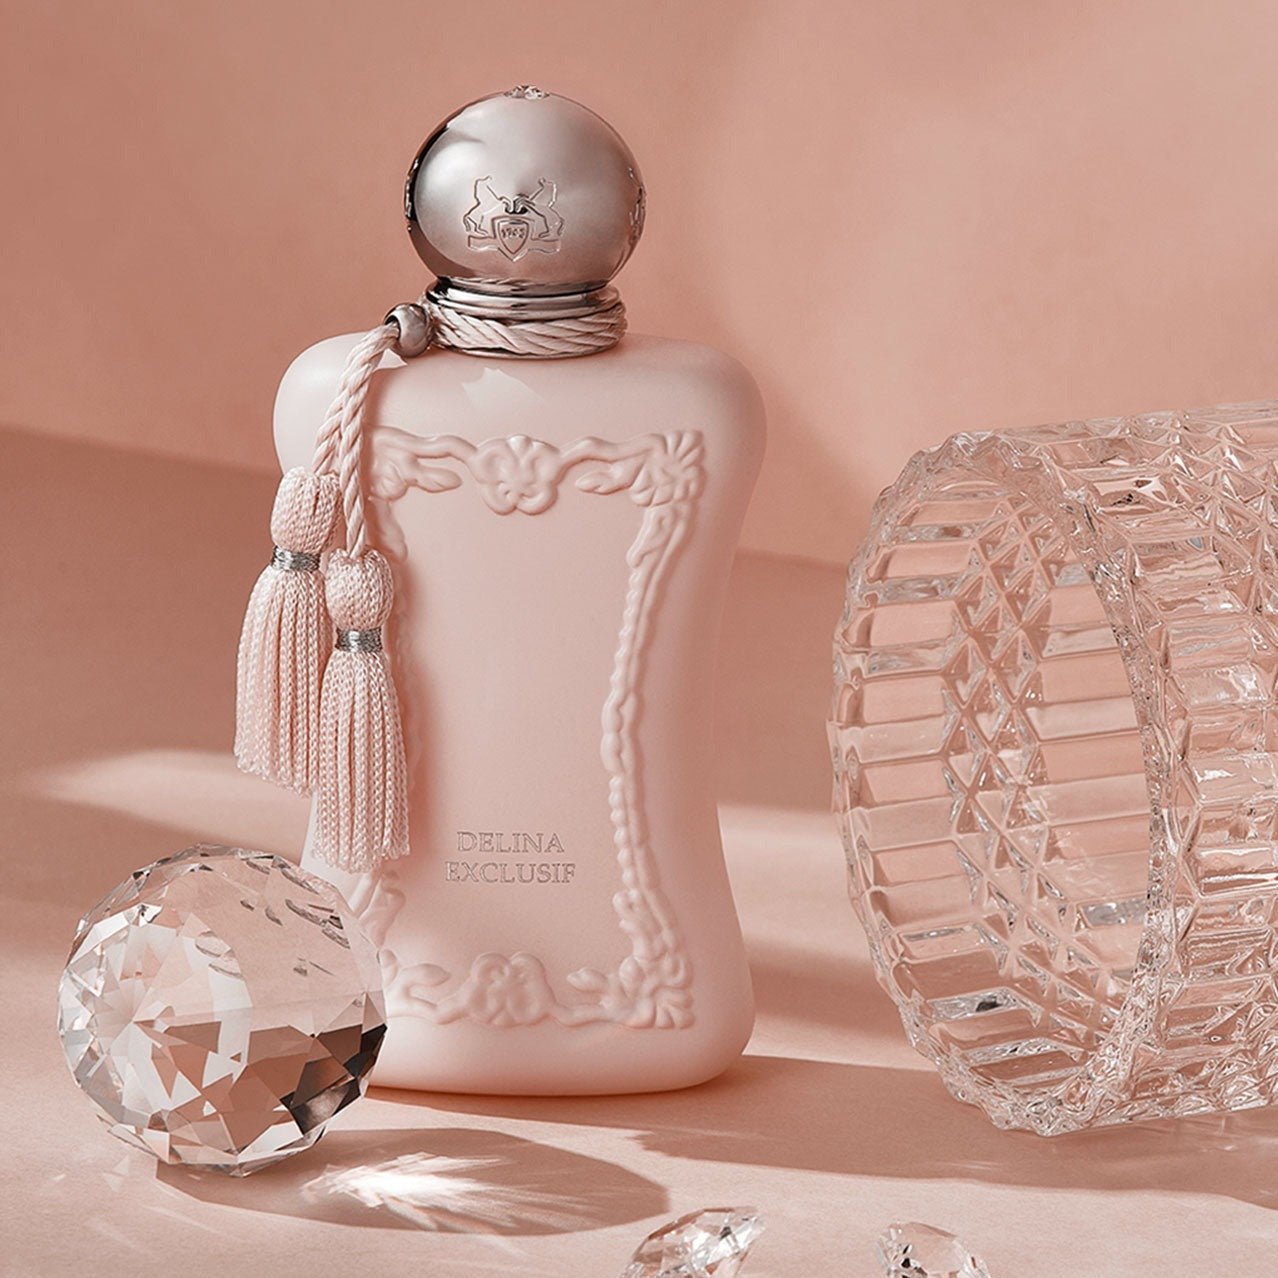 Parfums De Marly Delina Exclusif Parfum | My Perfume Shop Australia